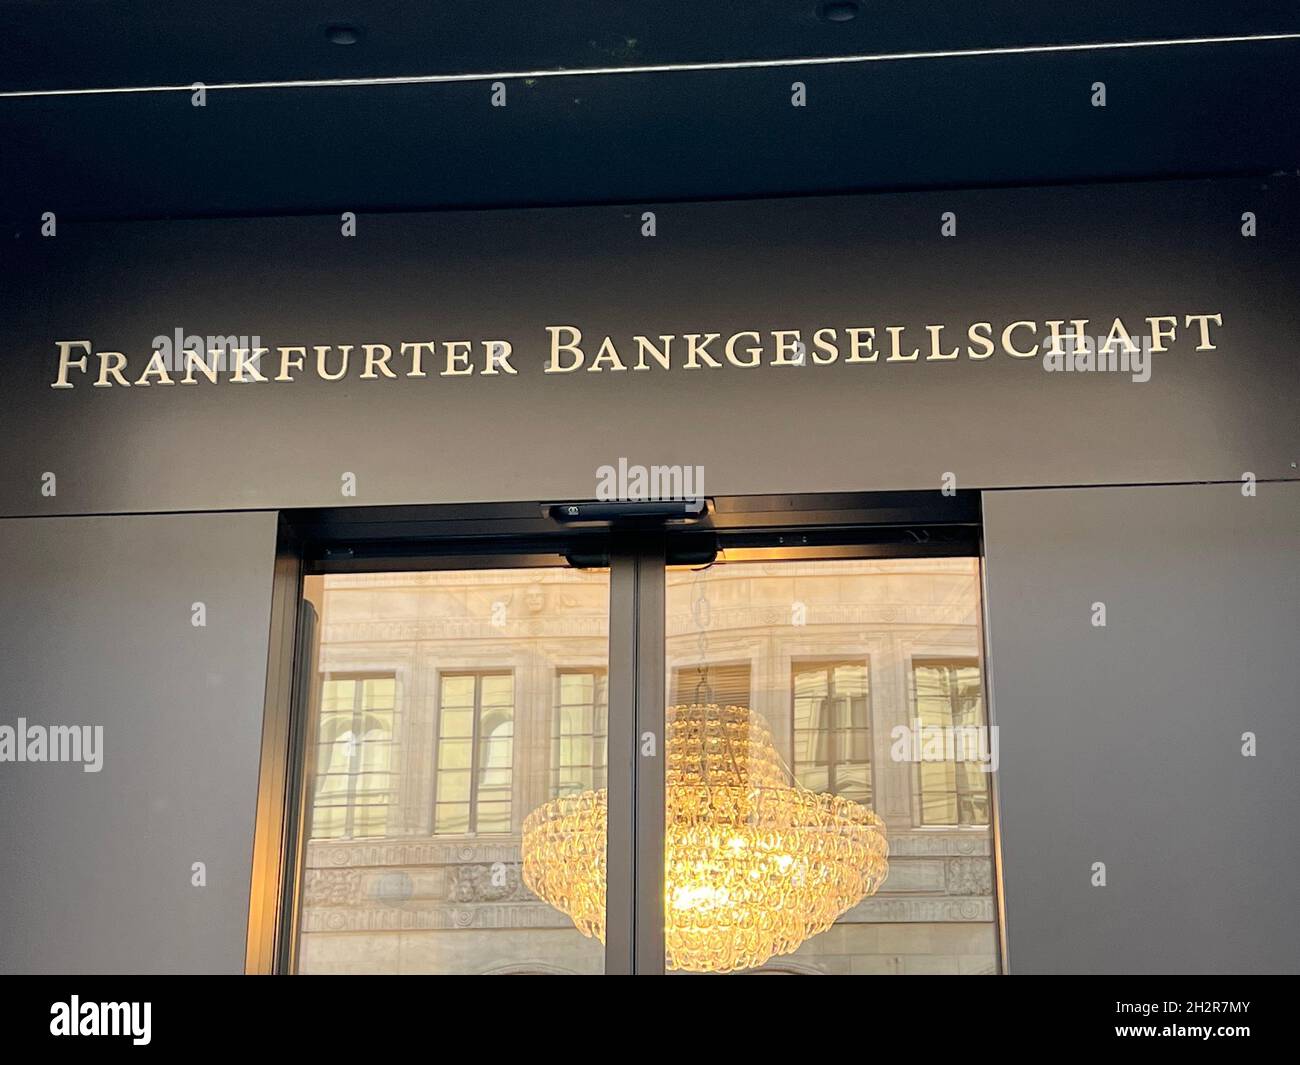 Entrée à une banque privée appelée Frankfurter Bankgesellschaft.La banque a son siège principal à Zurich.C'est la banque privée du groupe financier Sparkasse. Banque D'Images